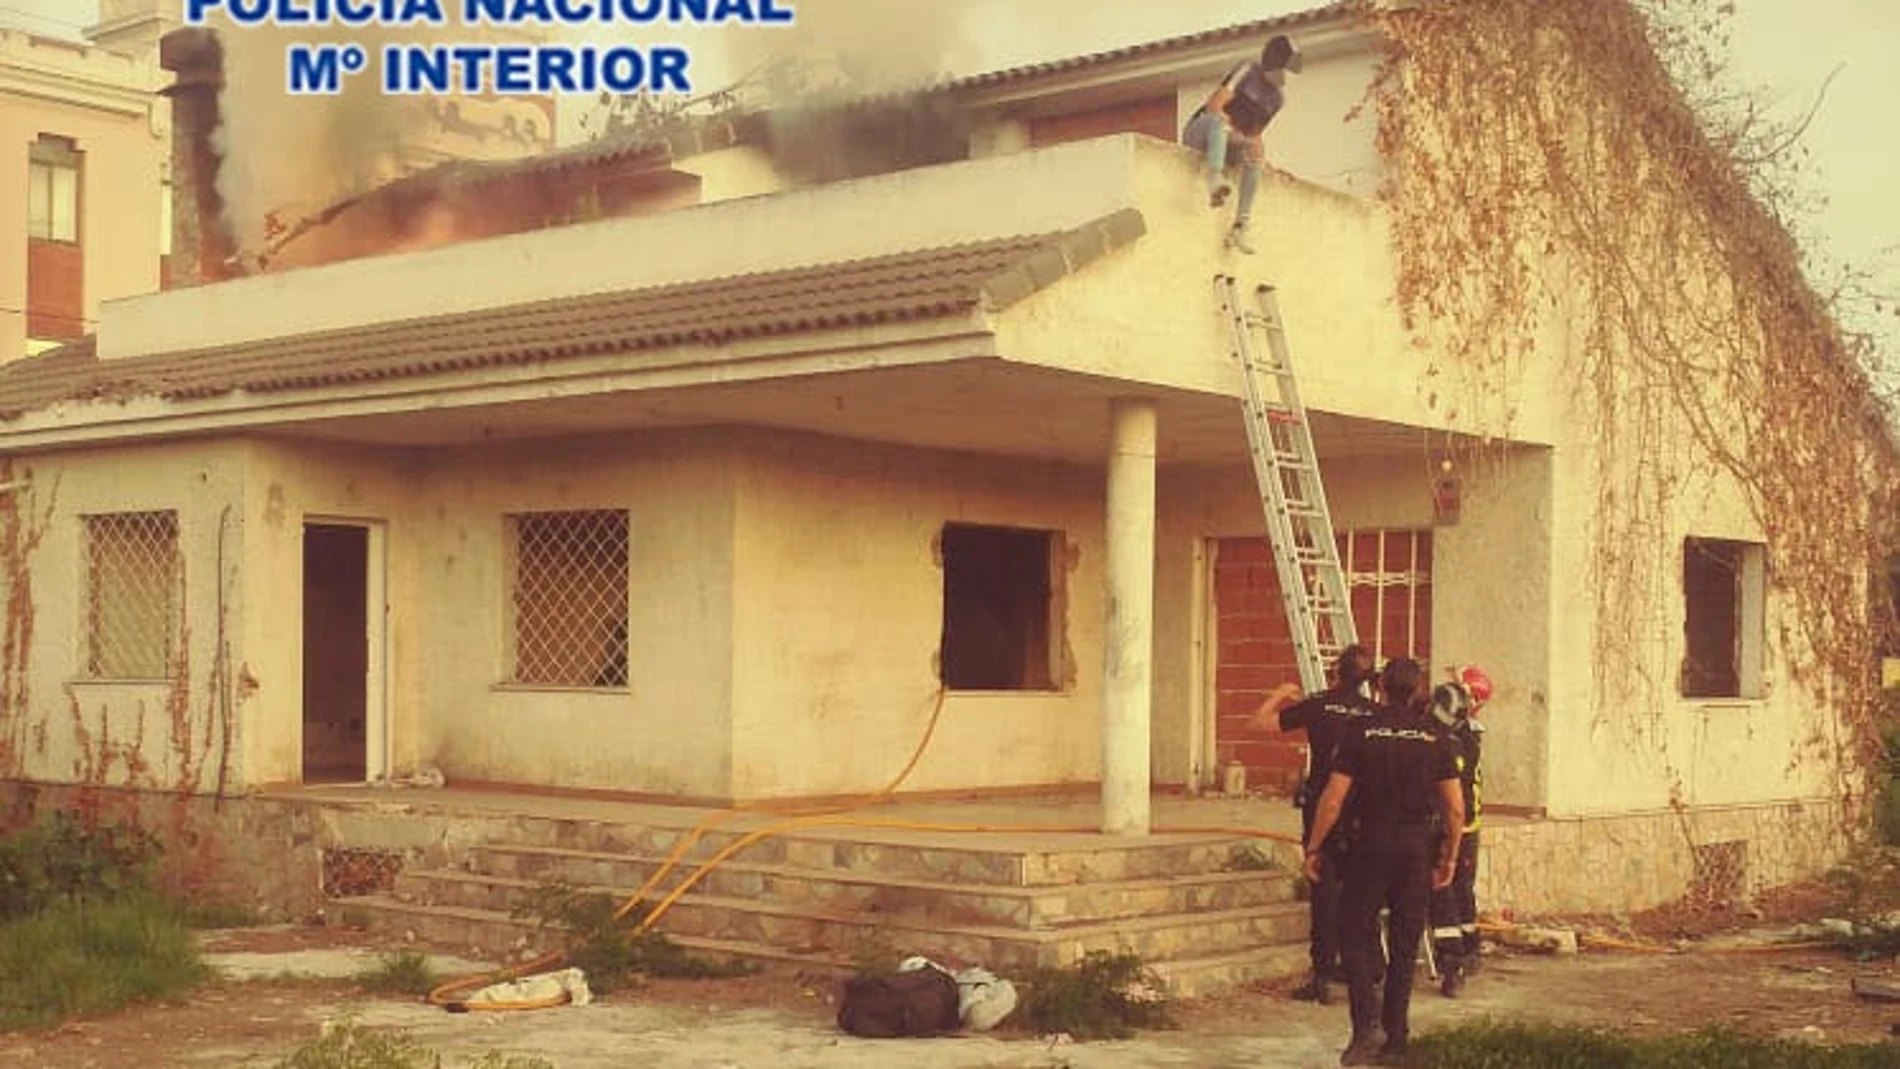 Imagen del rescate del lugar presuntamente incendiado por el ahora detenidoPOLICÍA NACIONAL01/10/2020